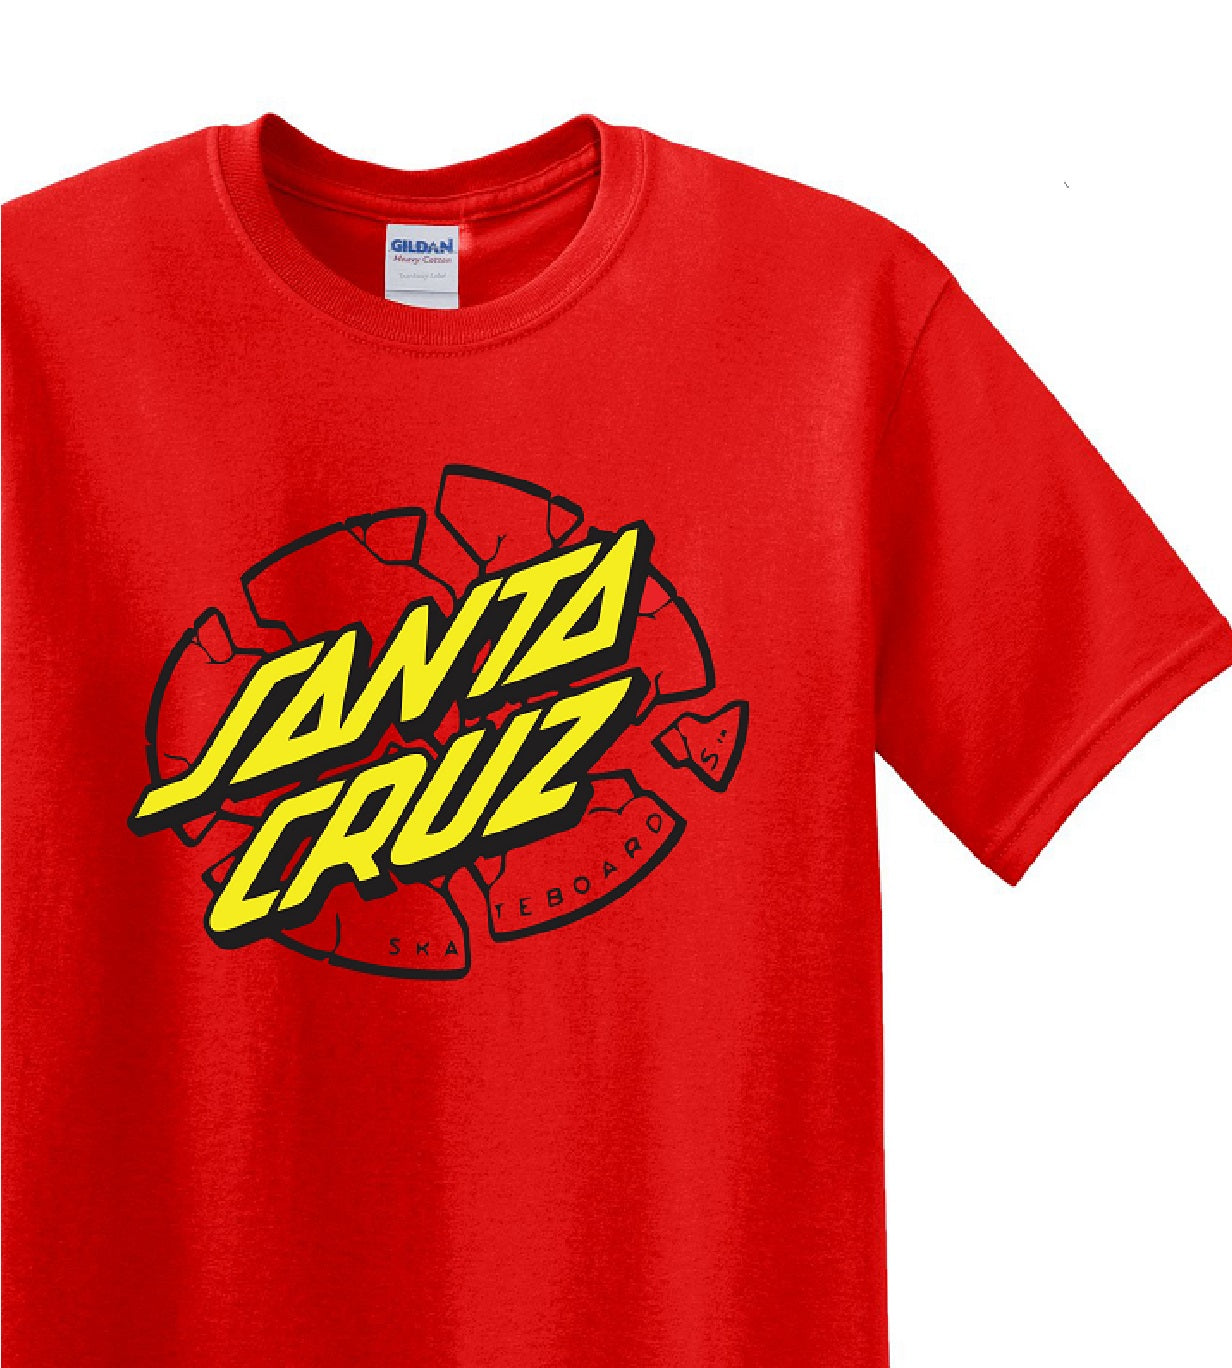 Skate Men's Shirt - Santa Cruz (Red) - MYSTYLEMYCLOTHING